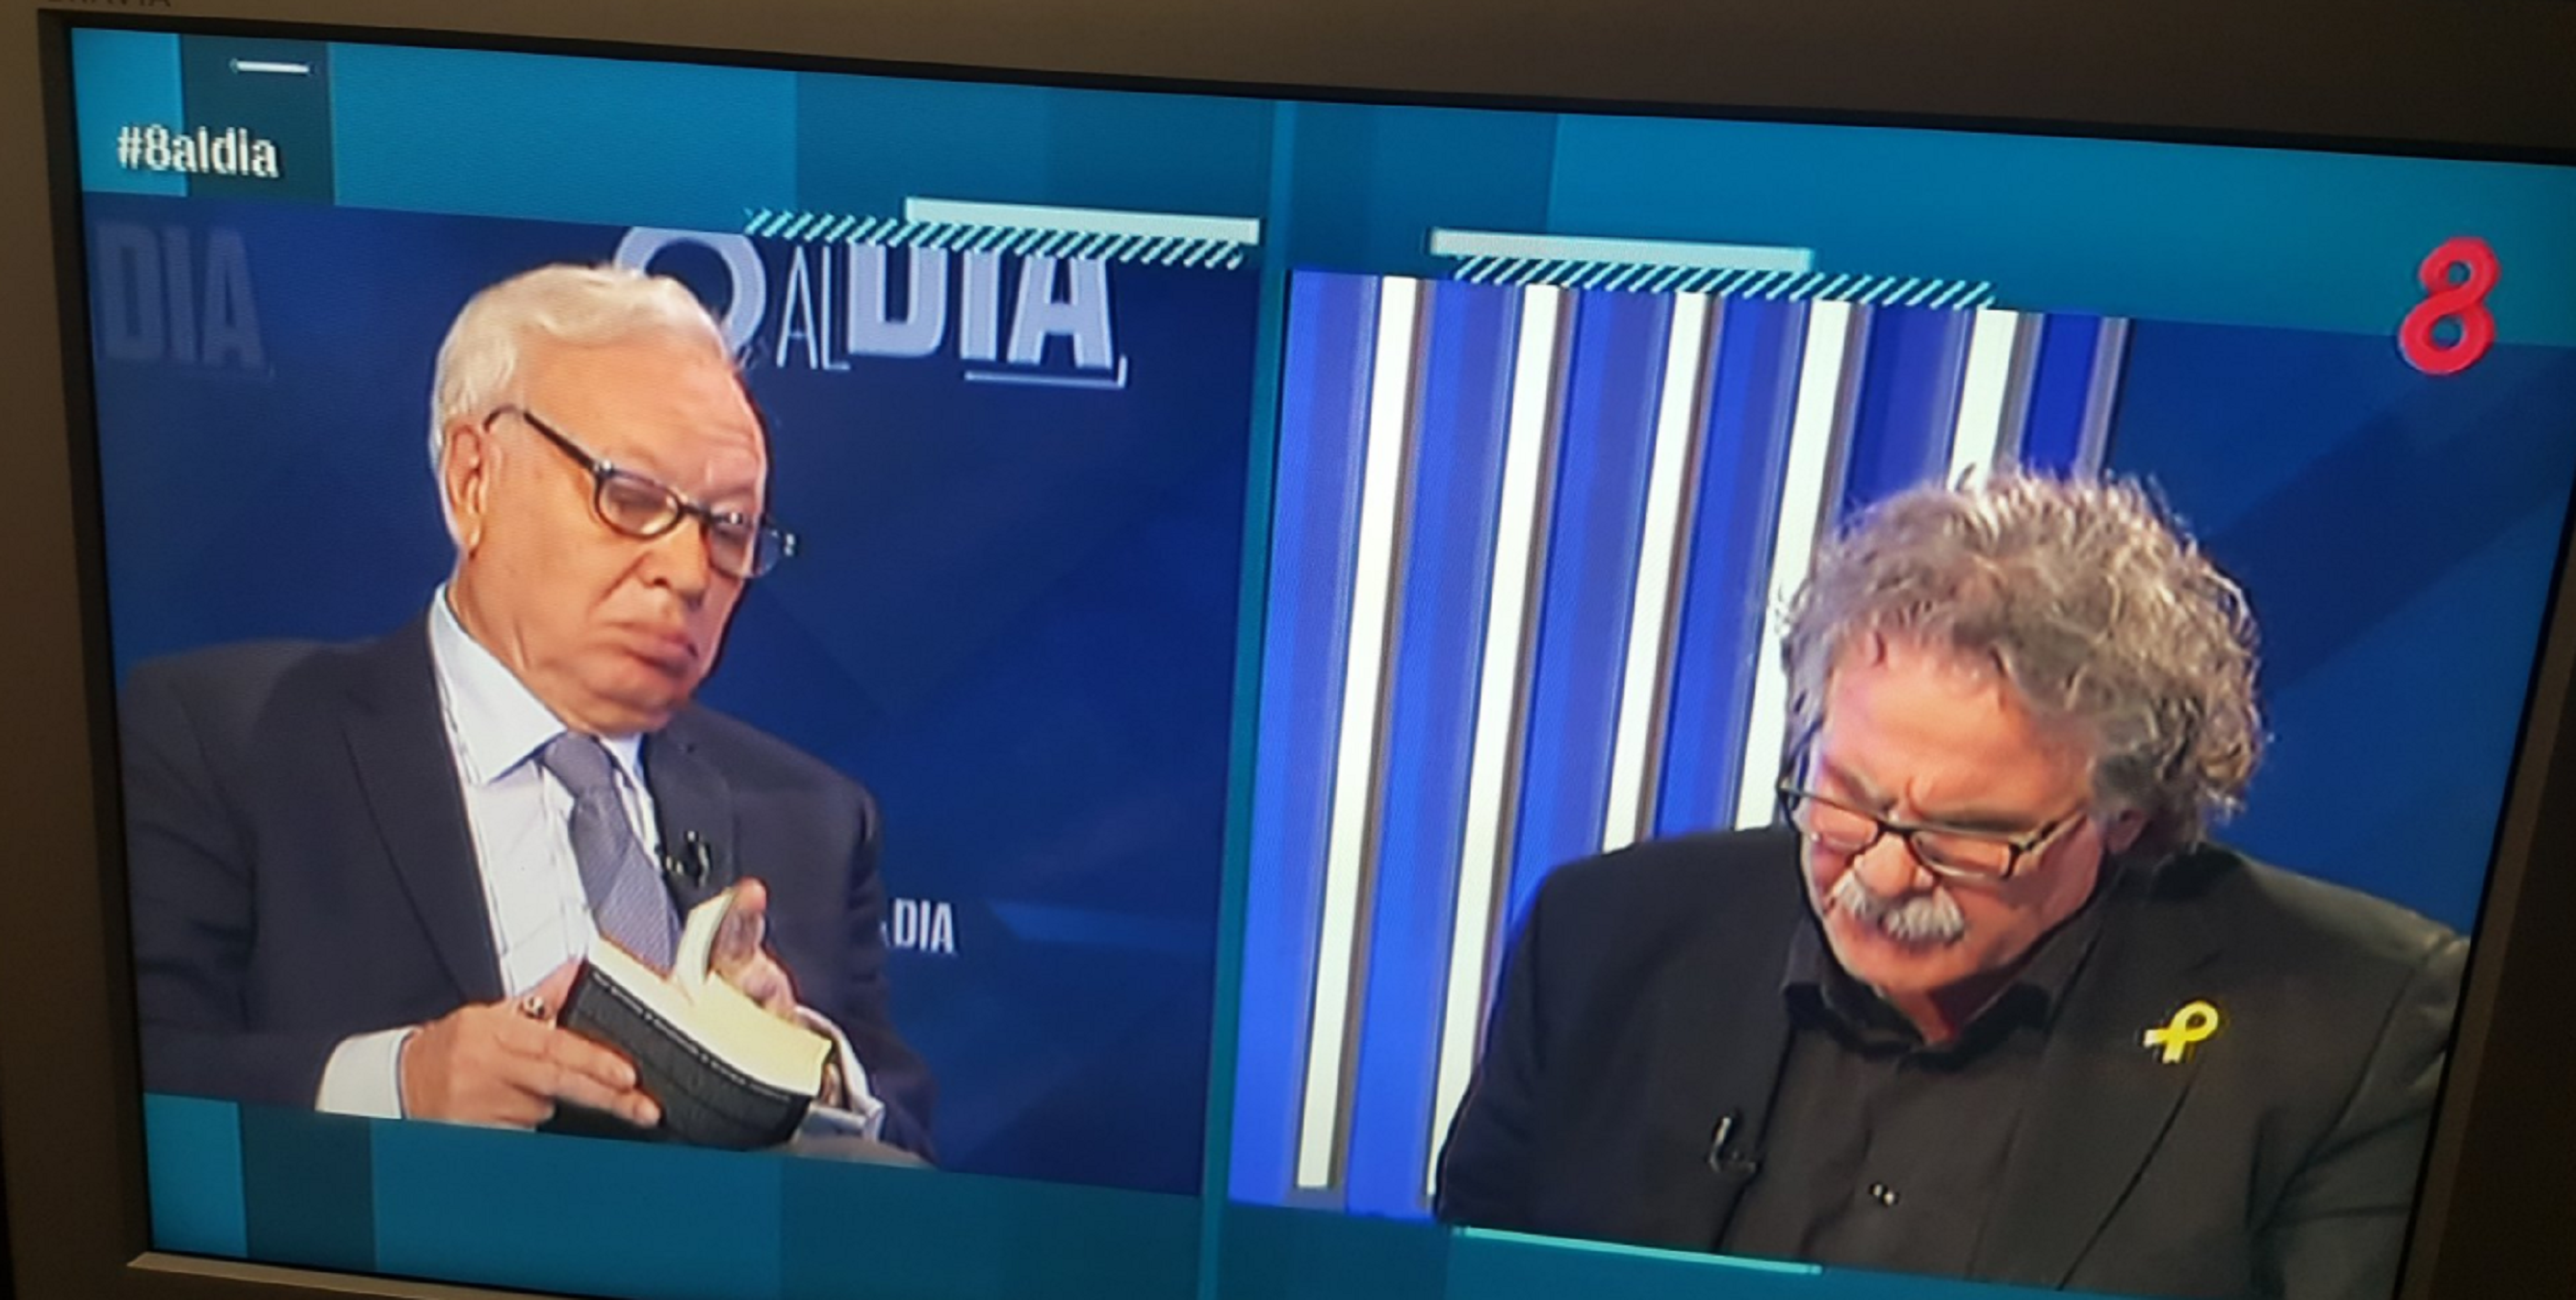 El cara a cara Margallo-Tardà en 8tv pincha con un 4% de audiencia